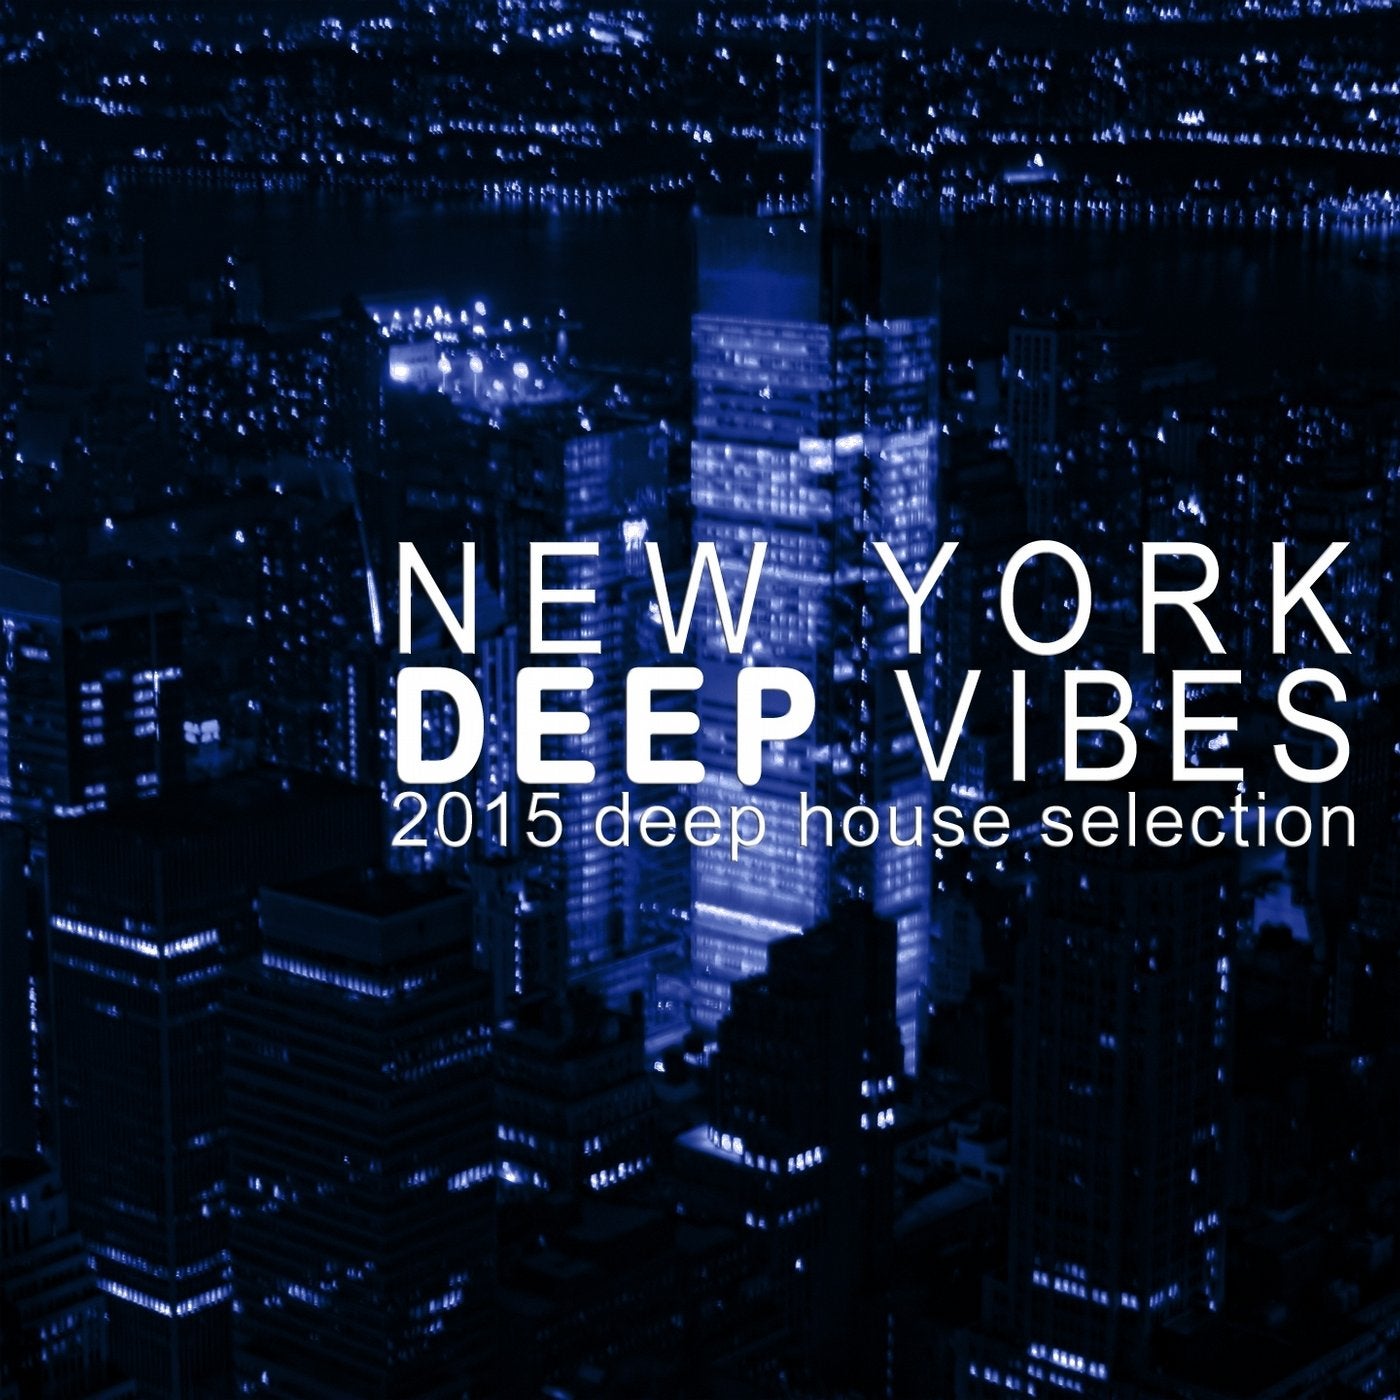 Deep vibes. 2015 Vibe. NY Vibes. Vibe 2015 Arts.